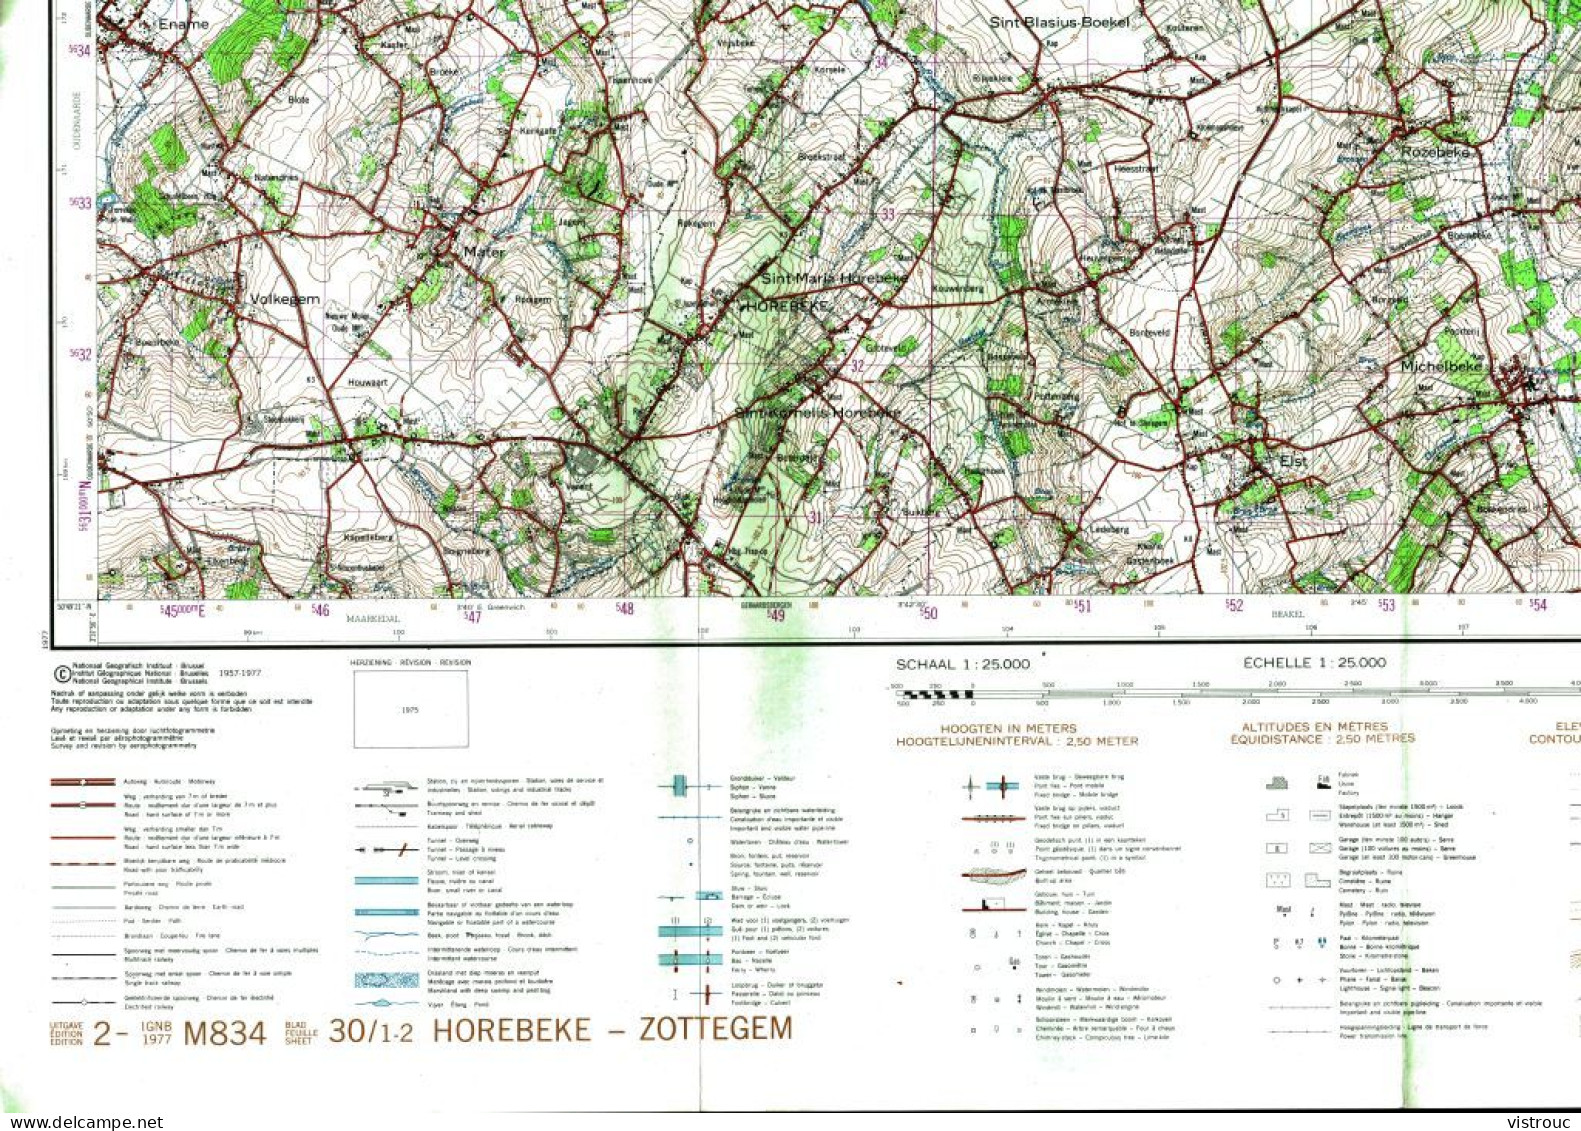 Institut Géographique Militaire Be - "HOREBEKE-ZOTTEGEM" - N° 30/1-2 - Edition: 1977 - Echelle 1/25.000 - Cartes Topographiques